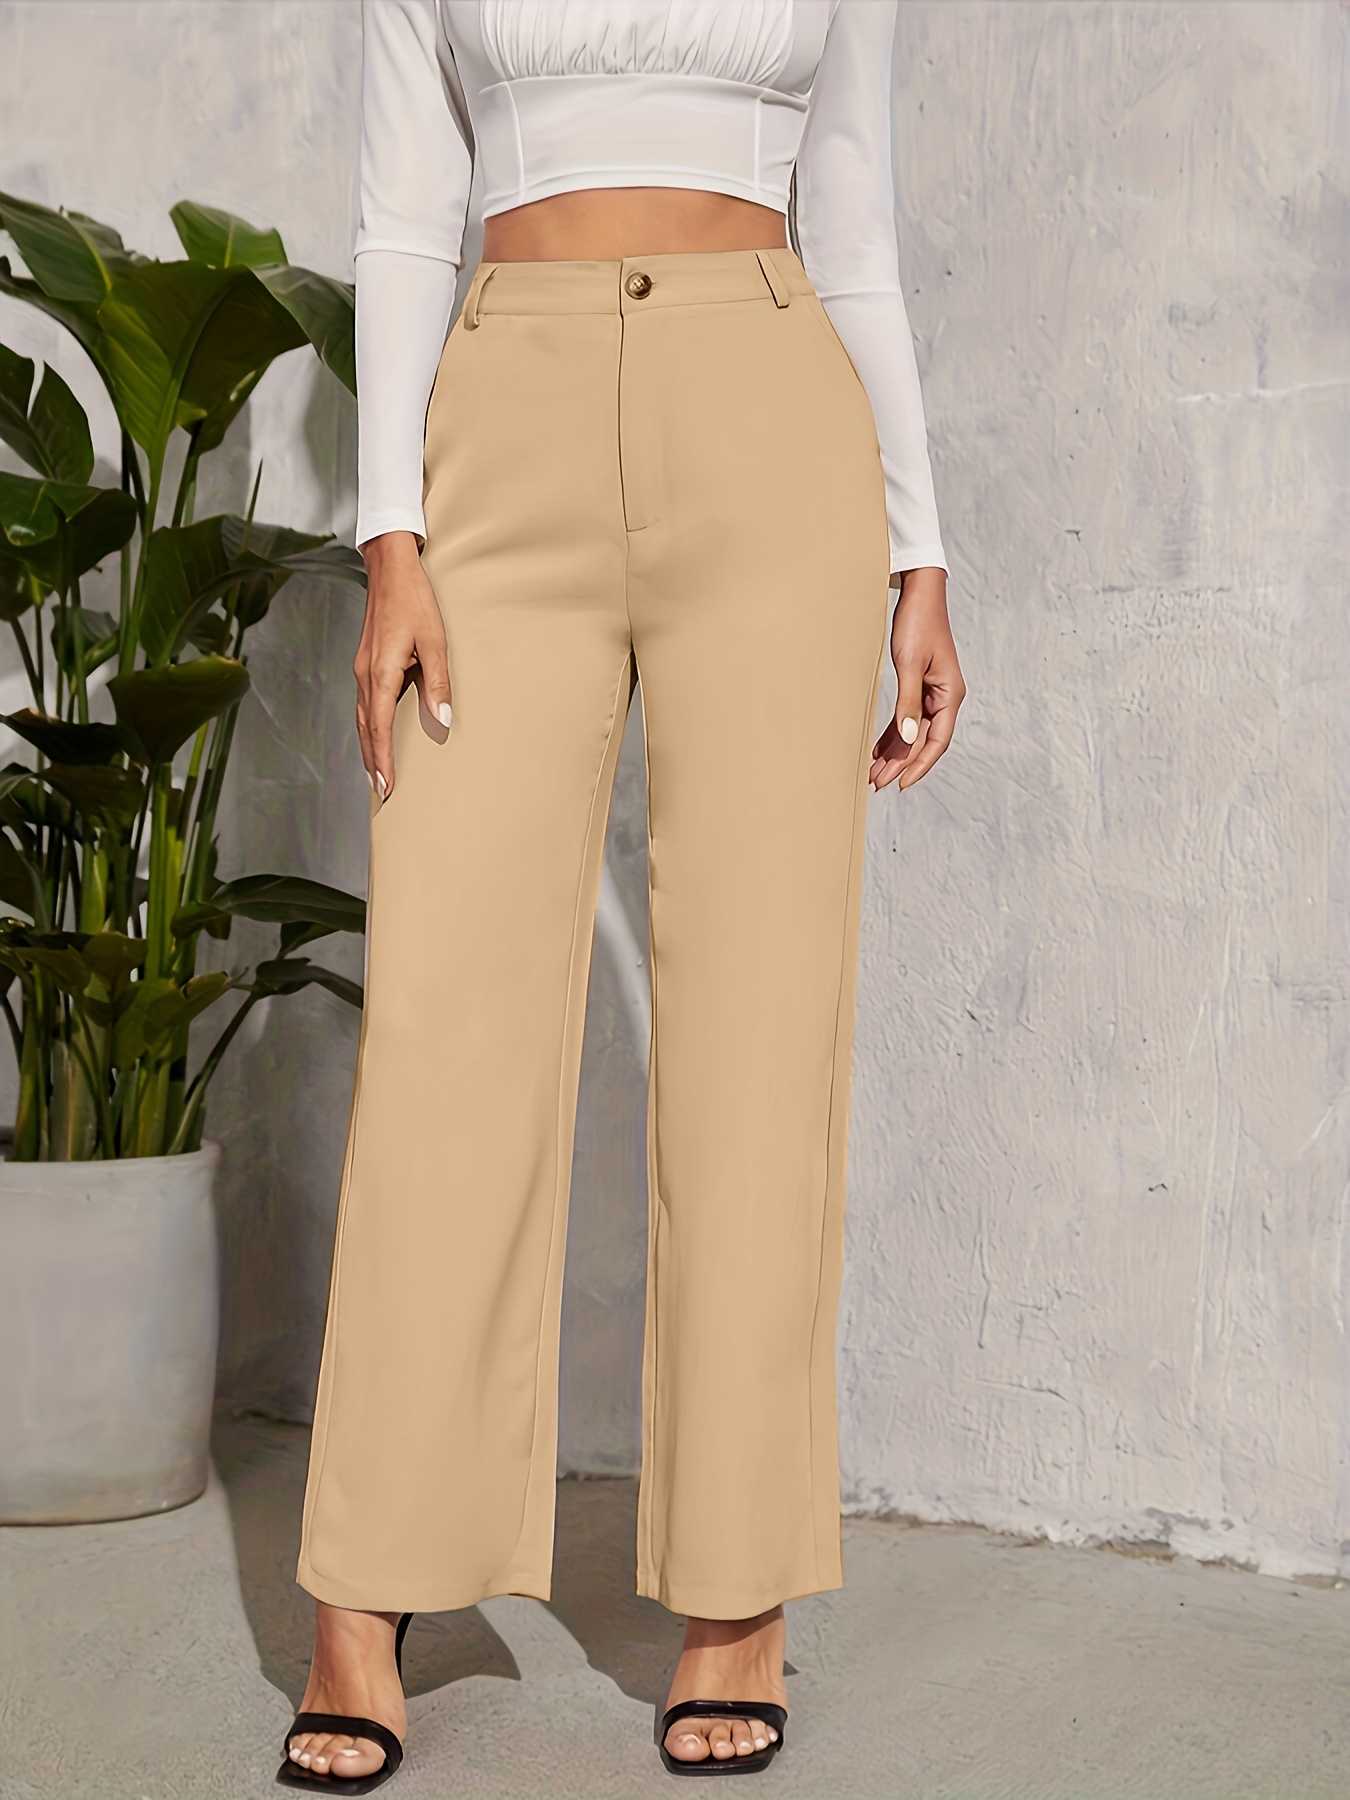 Pantalones Rectos Con Cintura Anudada, Pantalones Elegantes De Color Liso  Para El Trabajo Y La Oficina, Ropa De Mujer